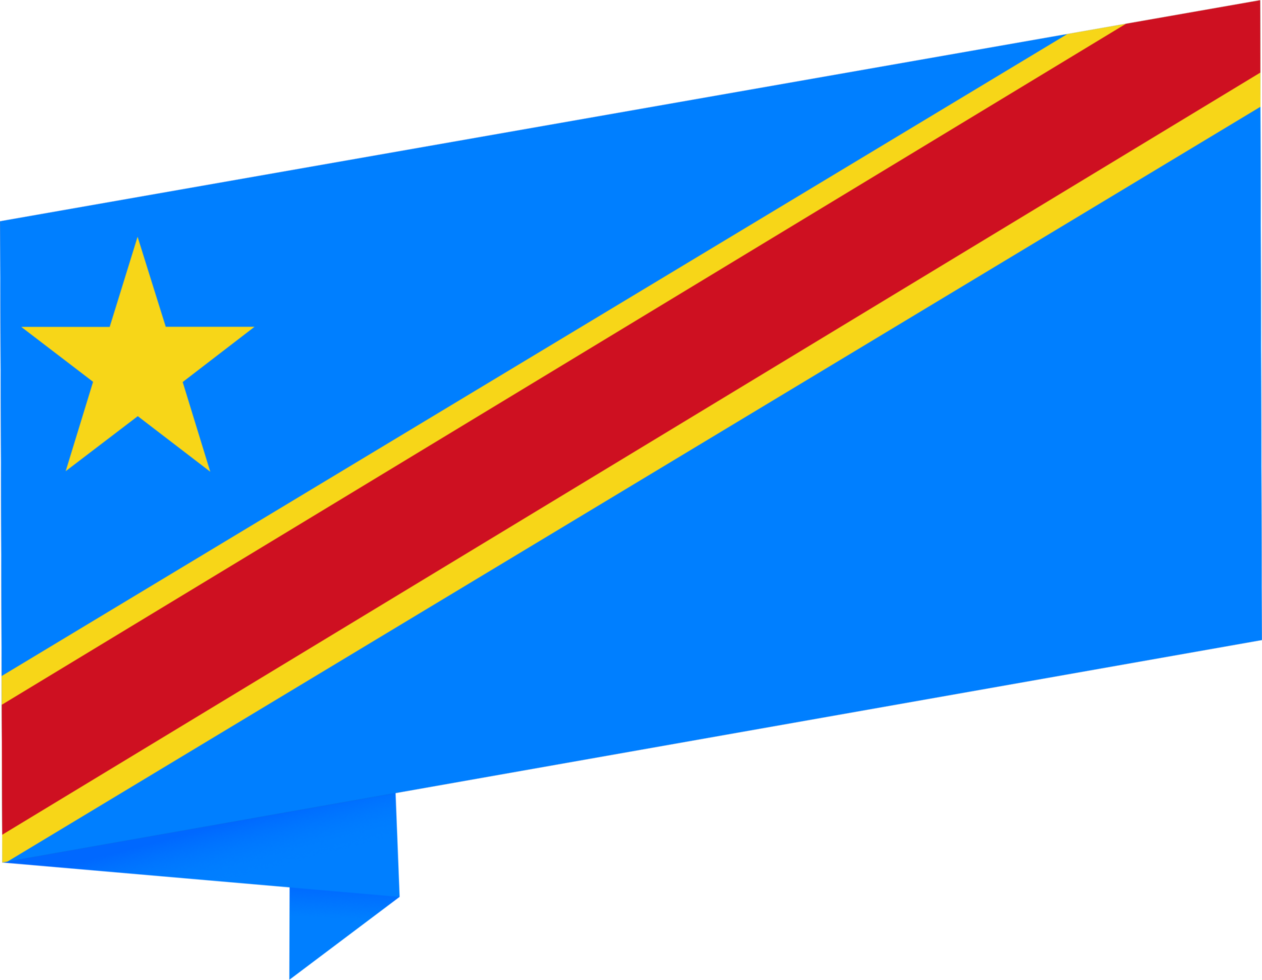 democrático república do a Congo bandeira onda isolado em png ou transparente fundo